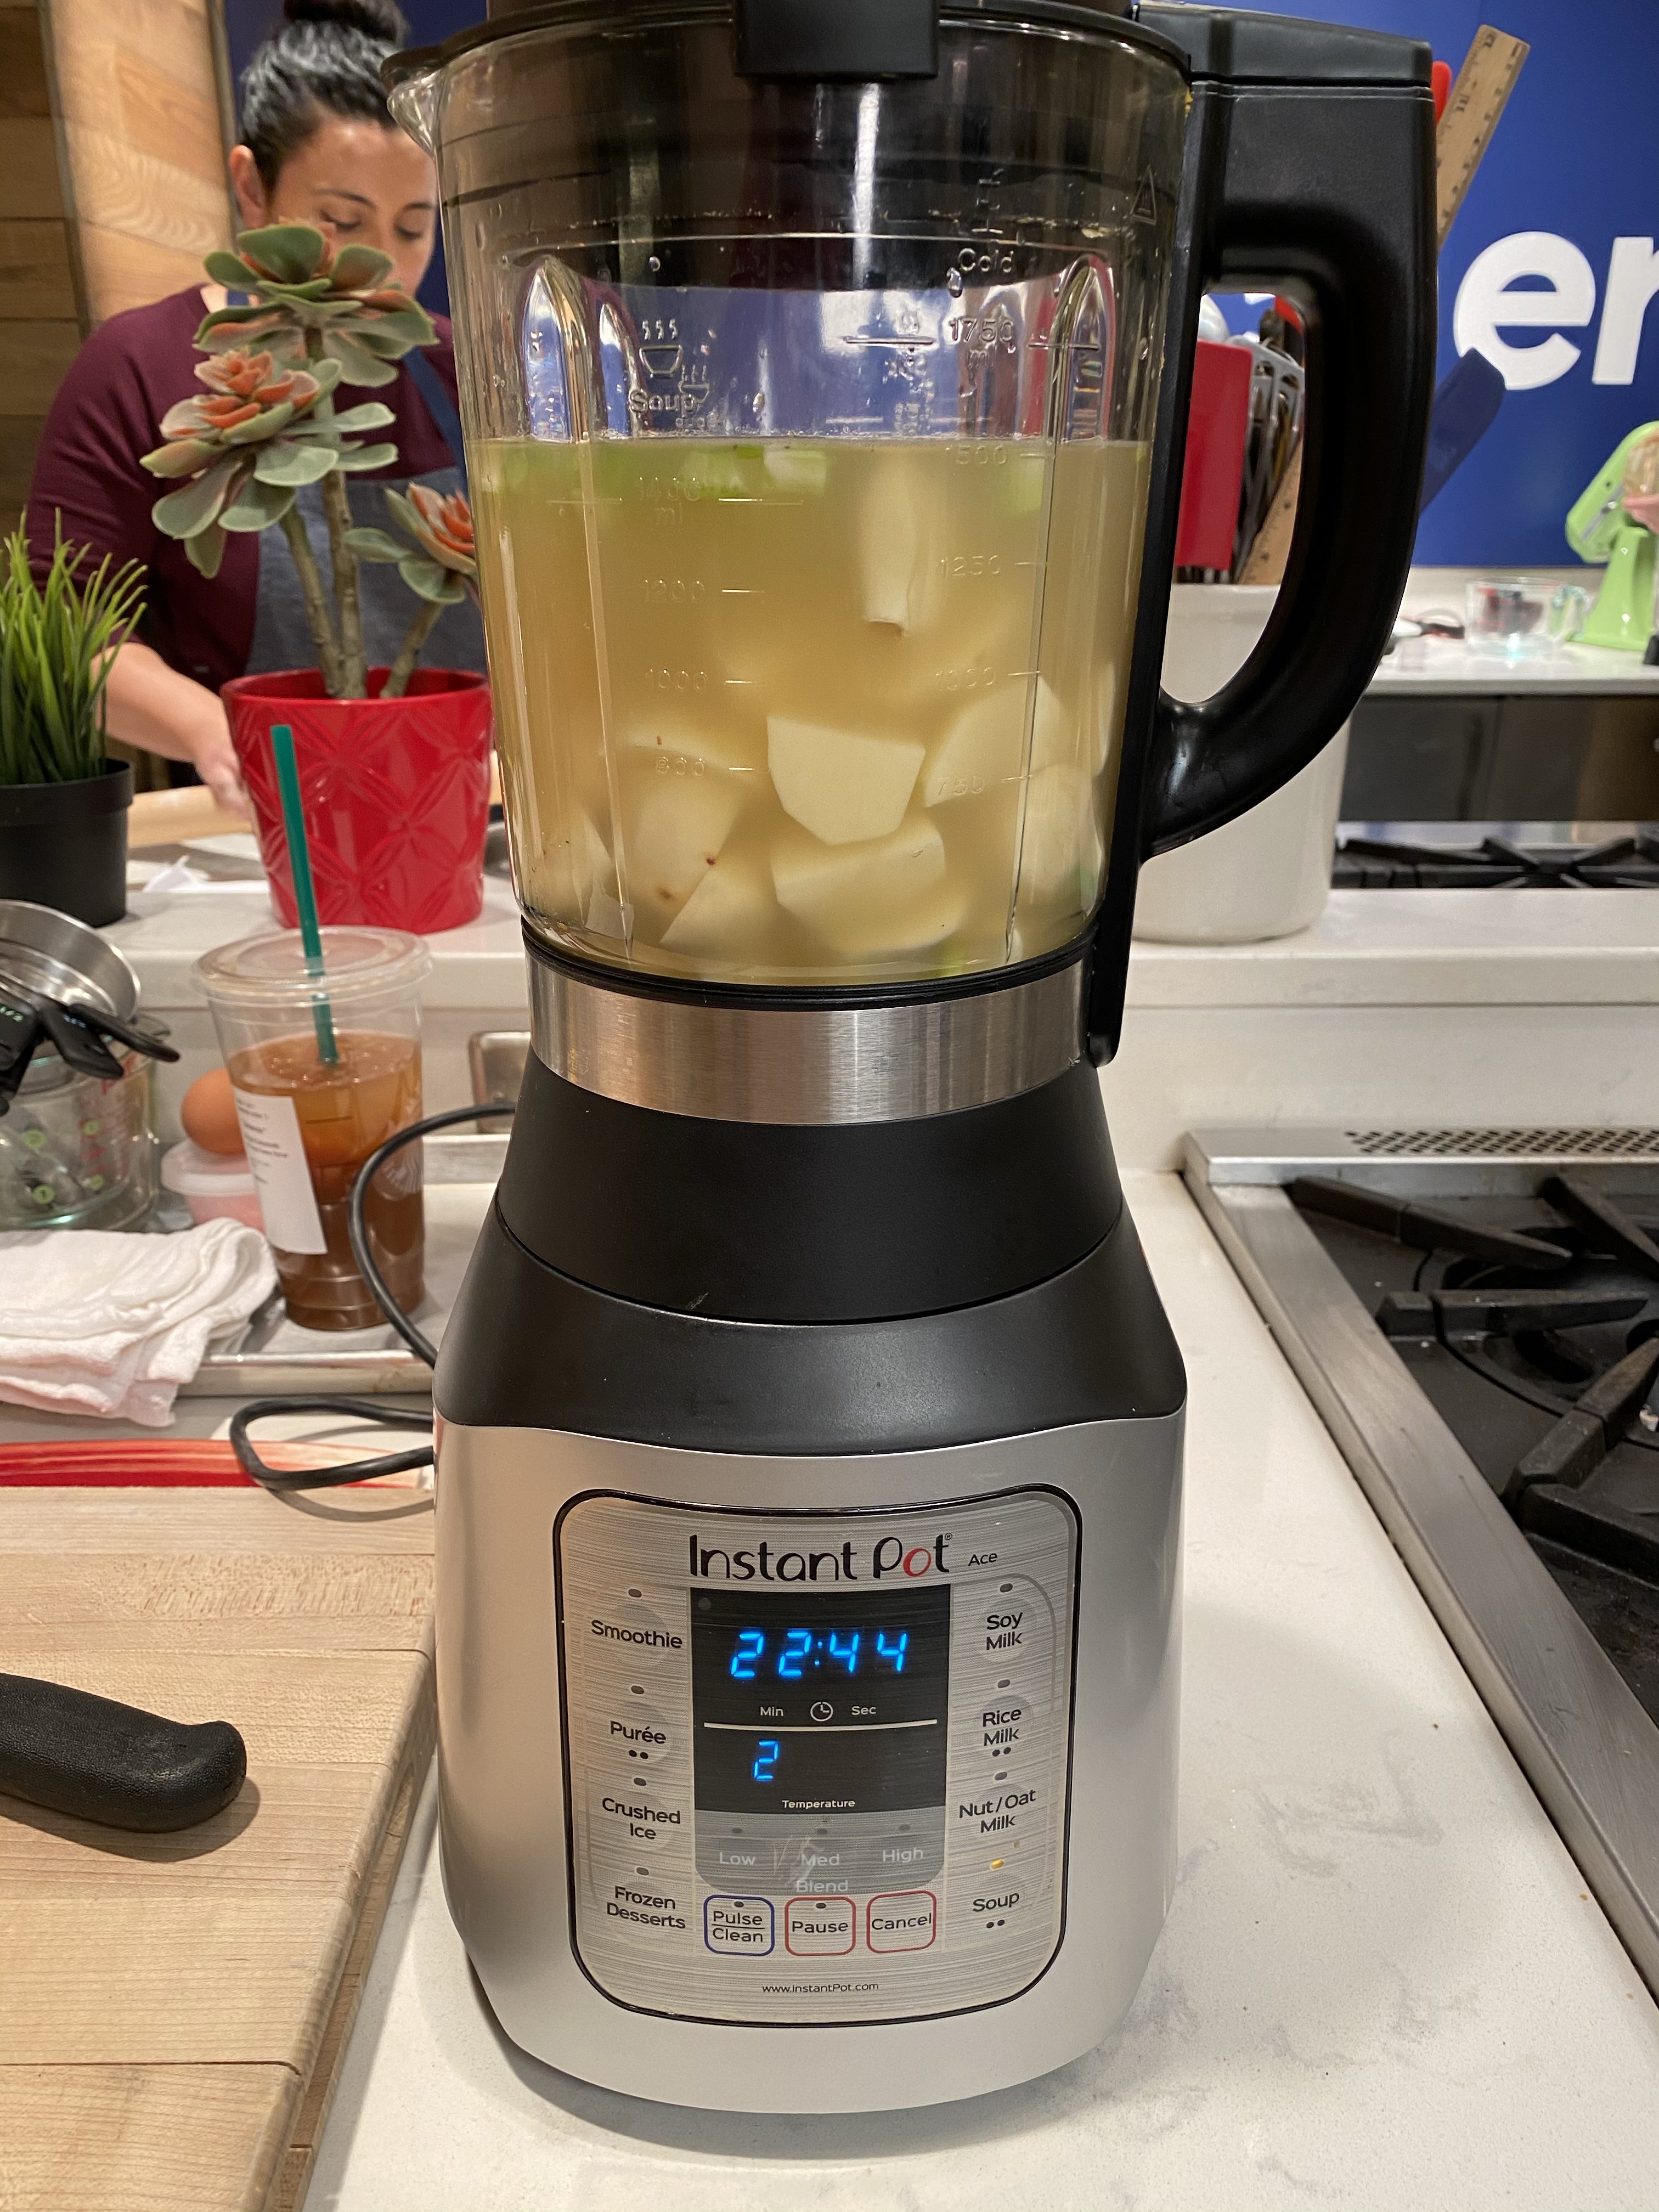 instant pot ace 60 cooking blender